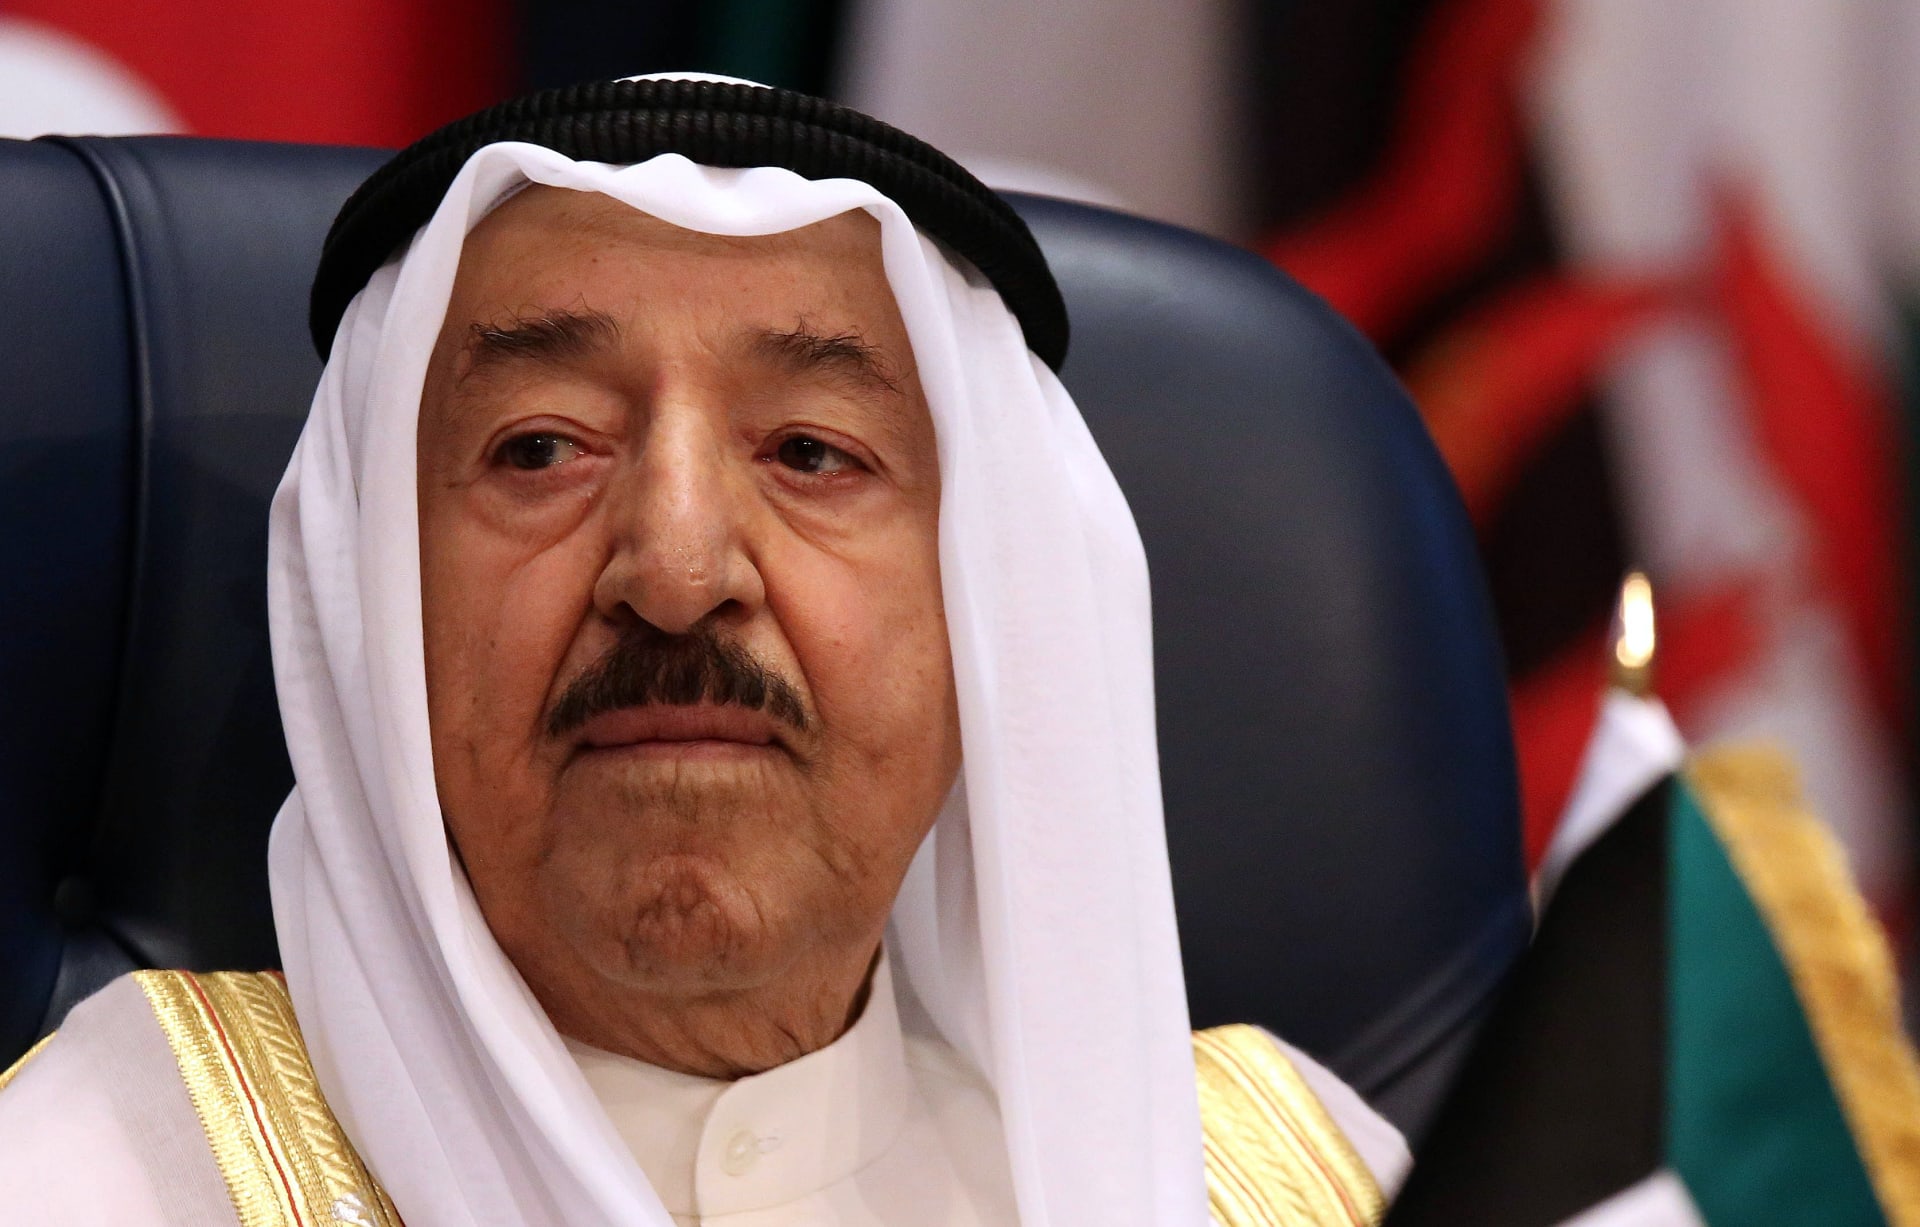 بعد أزمة "تسريبات خيمة القذافي".. الديوان الأميري الكويتي: ما قاله "الدويلة" غير صحيح